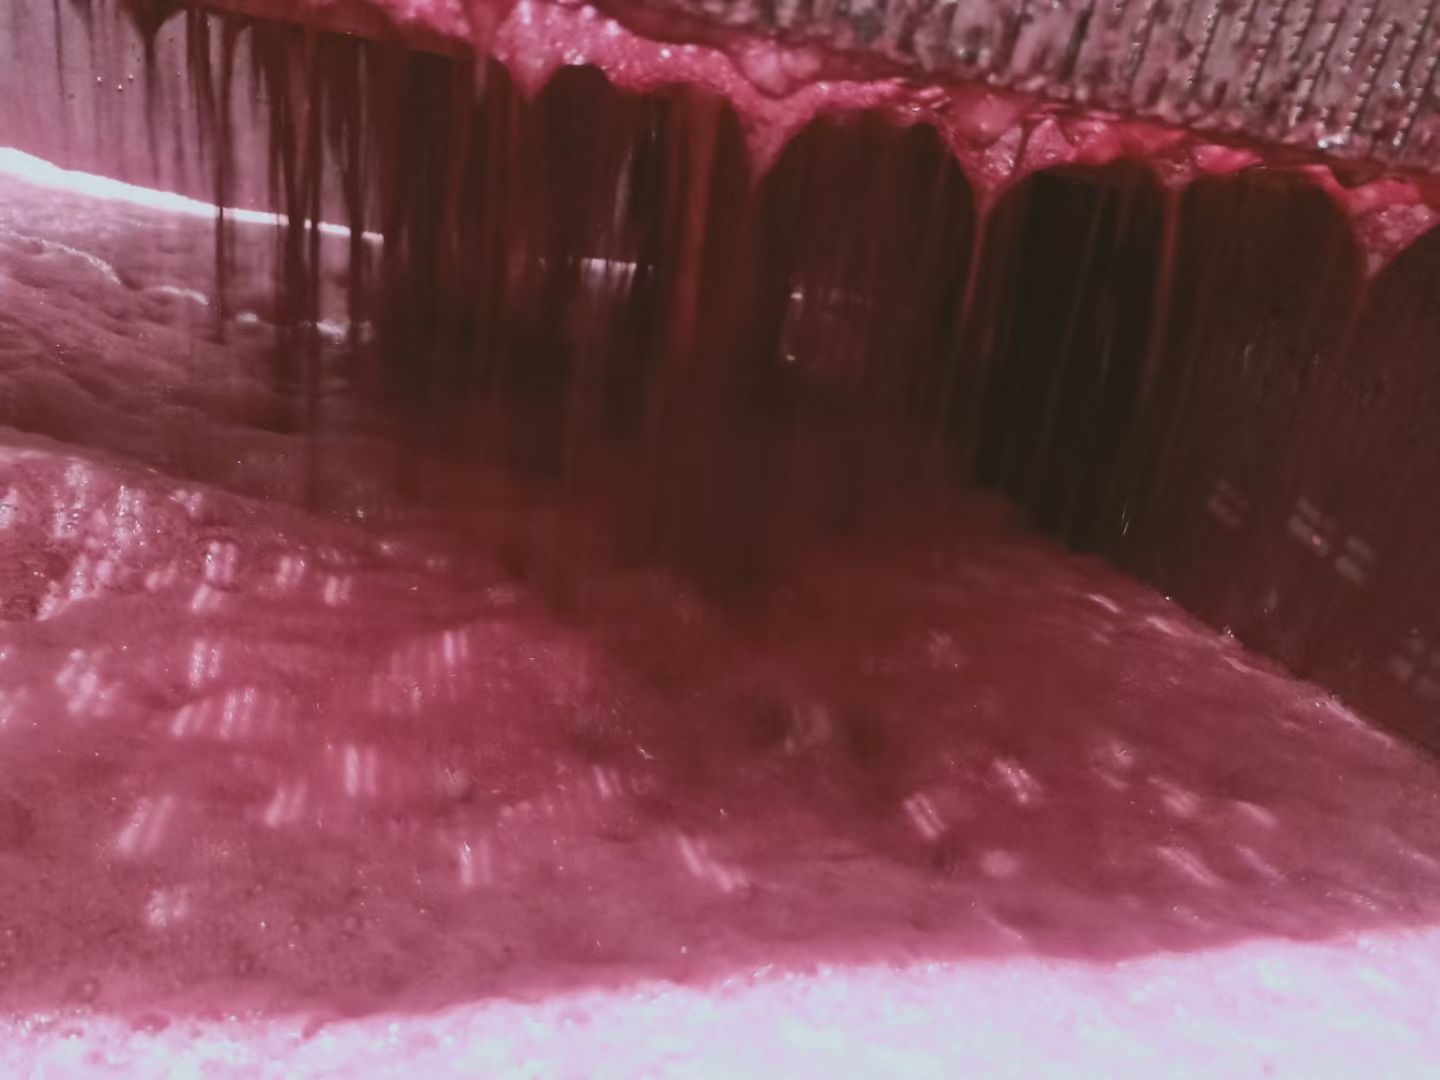 Zumo de uva al inicio de la fermentación